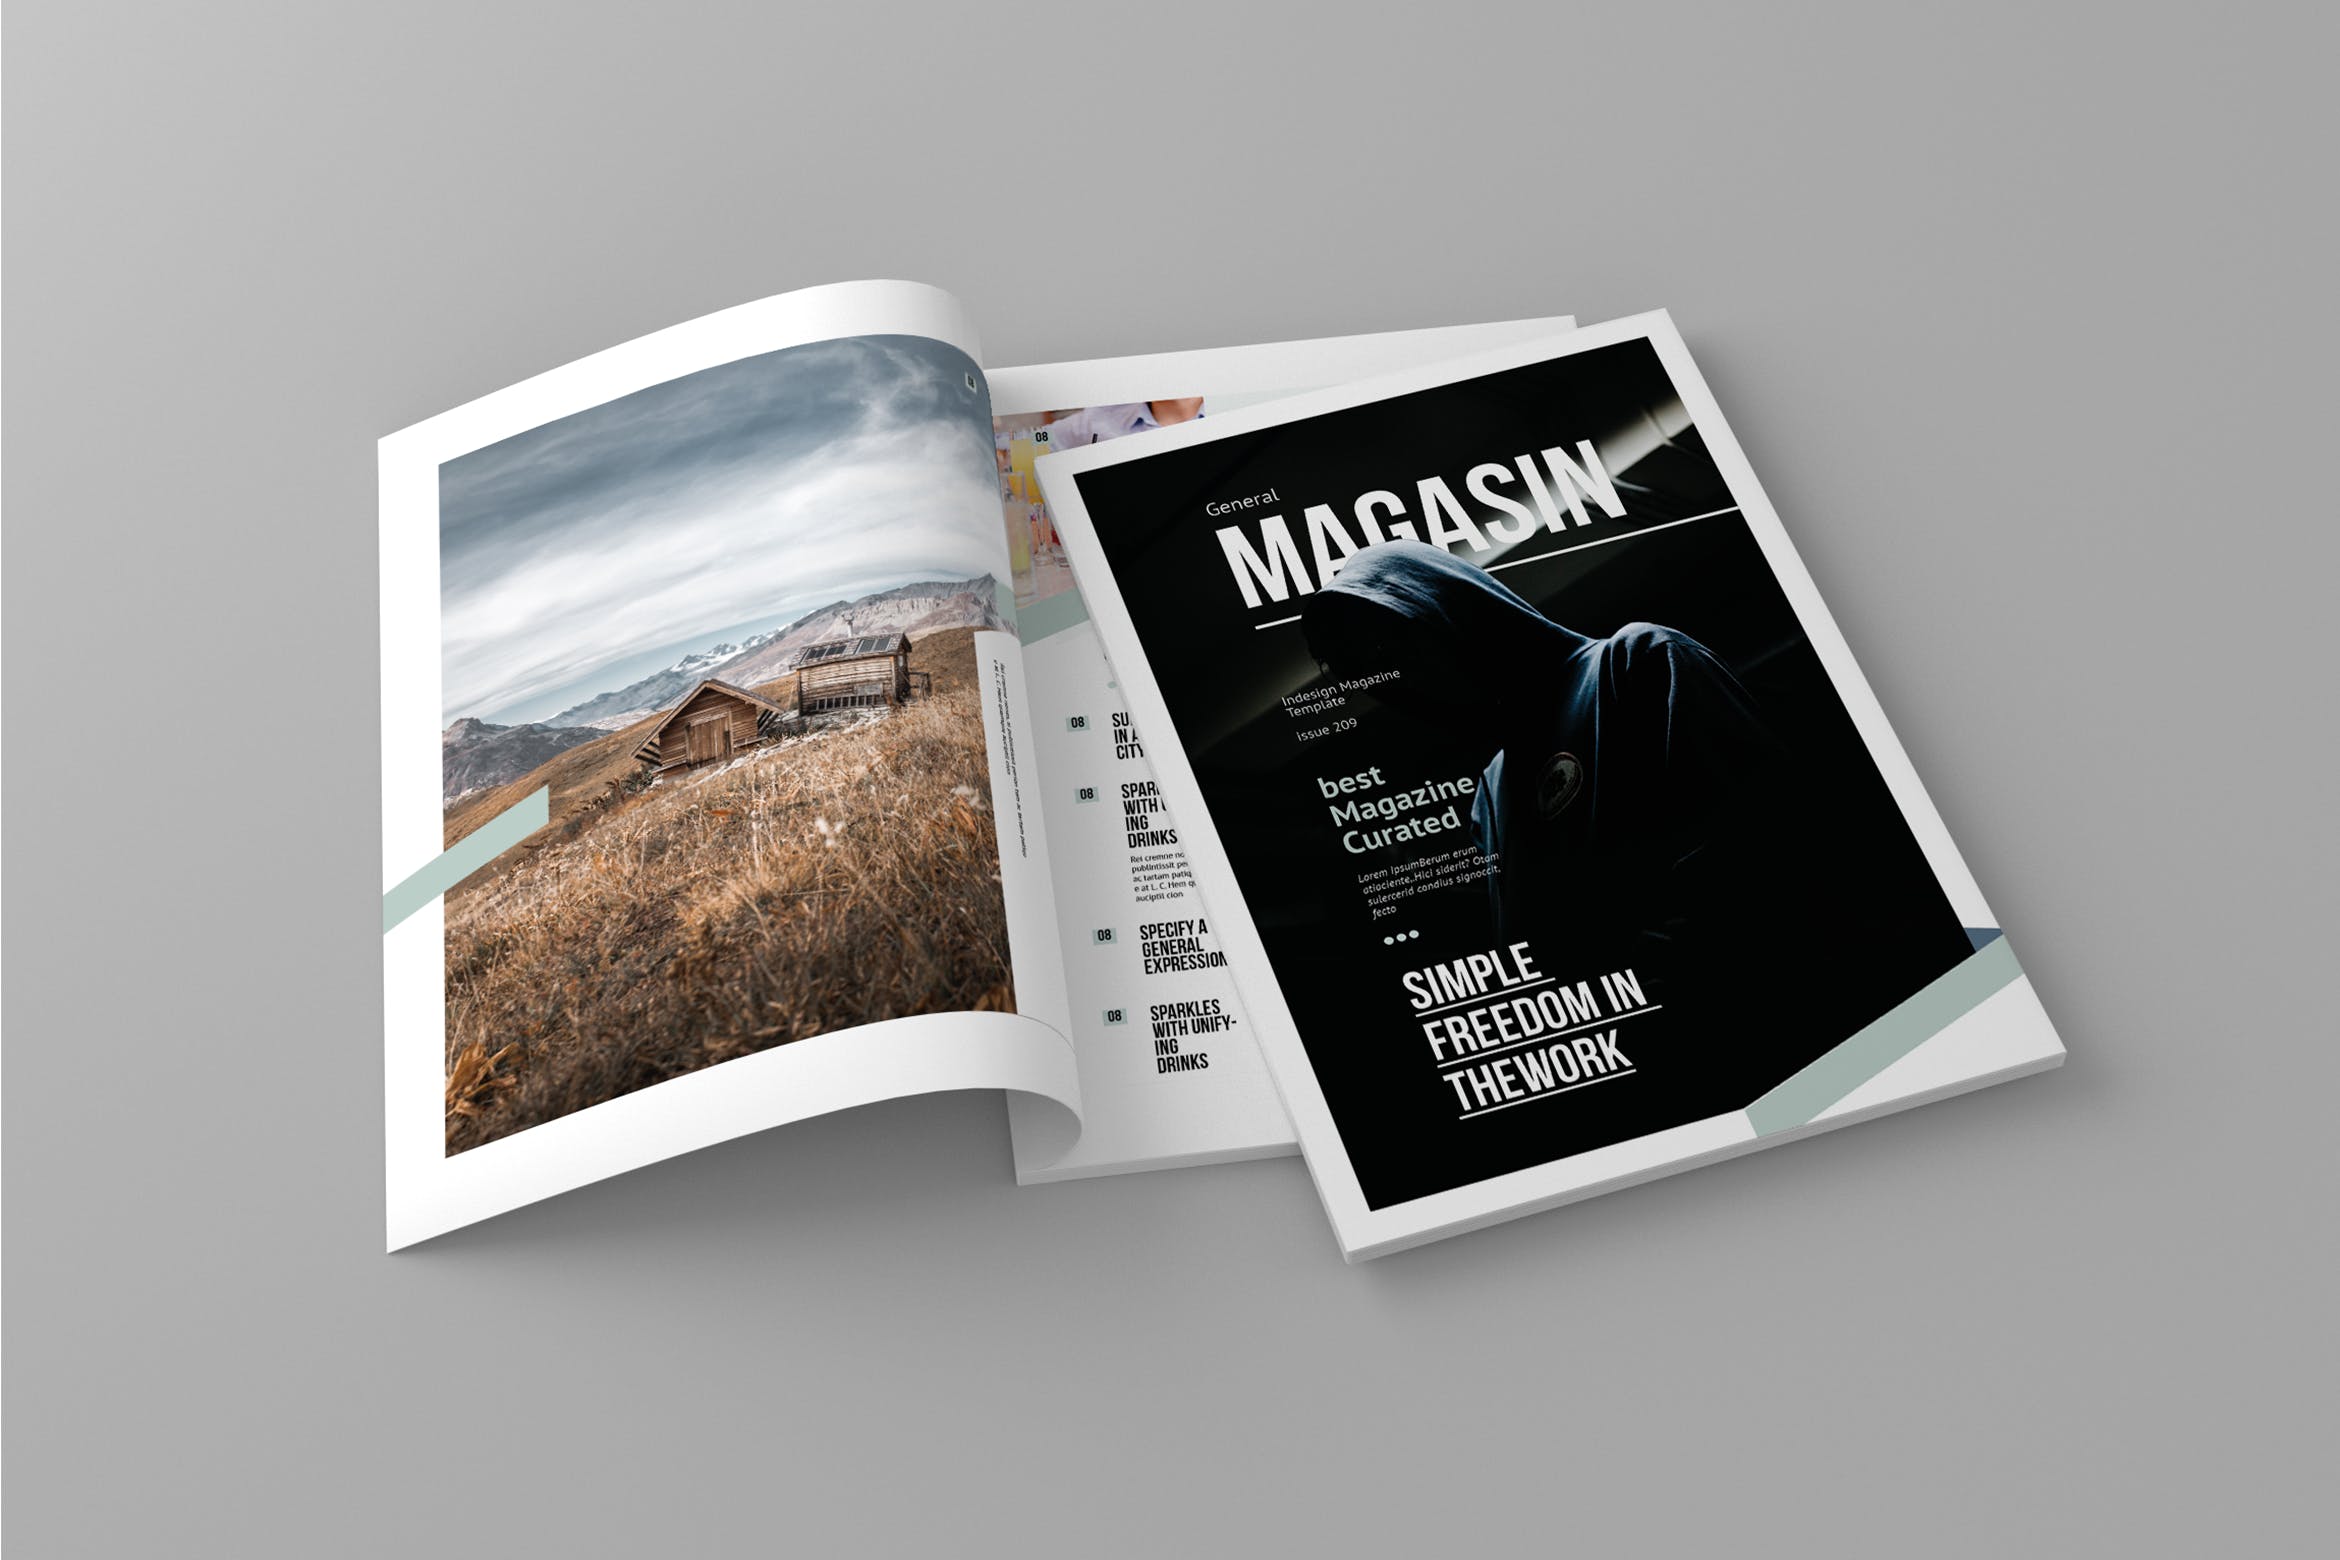 多用途企业宣传素材库精选杂志排版设计模板 Magasin – Magazine Template插图